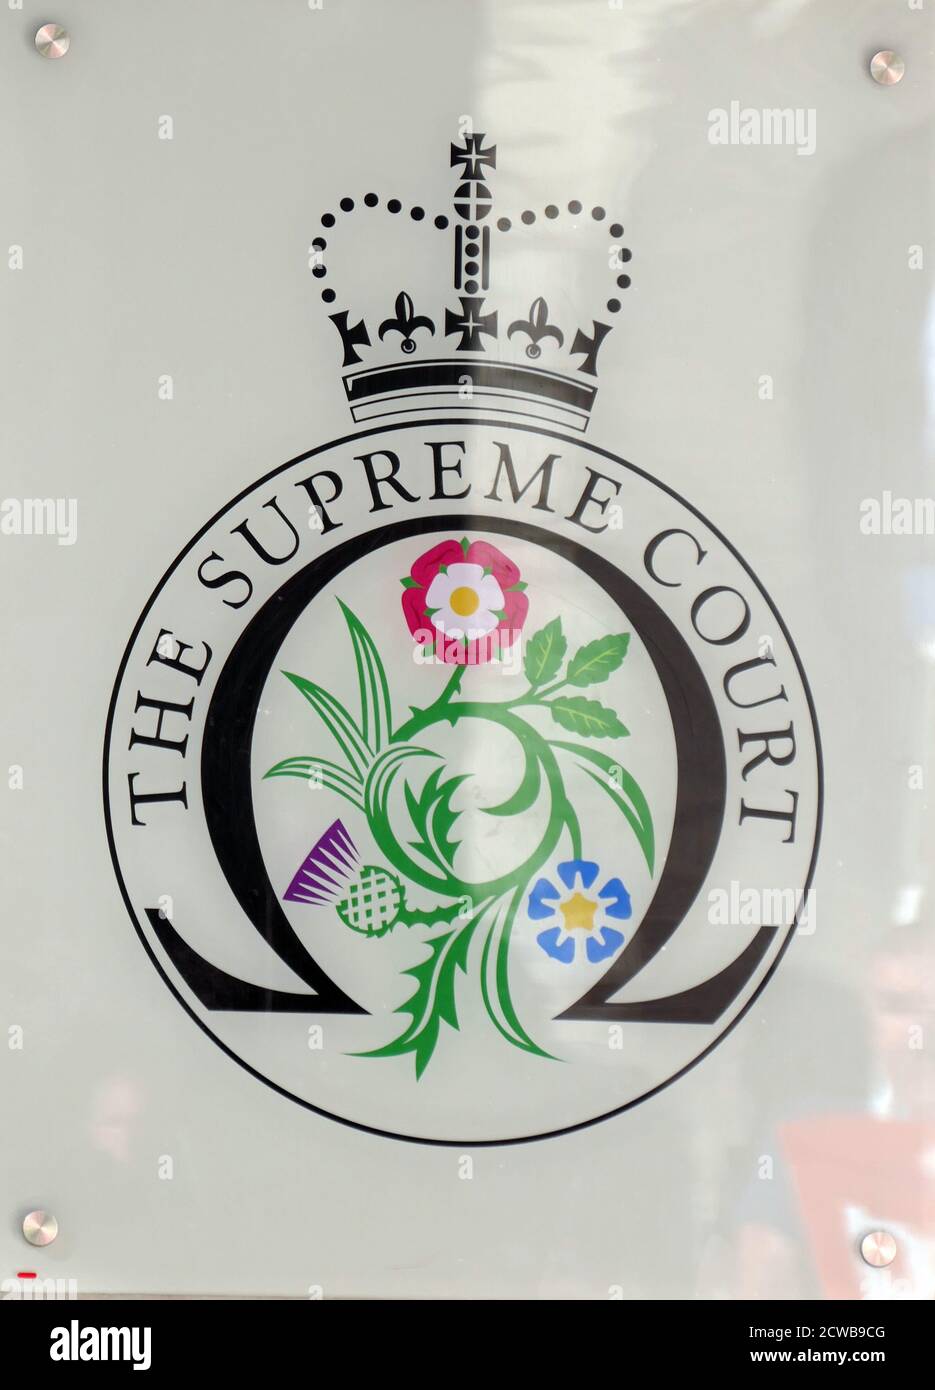 El Tribunal Supremo es el último tribunal de apelación en el Reino Unido para casos civiles y para casos penales de Inglaterra, Gales e Irlanda del Norte. El Tribunal Supremo del Reino Unido fue establecido oficialmente el 1 de octubre de 2009. Foto de stock